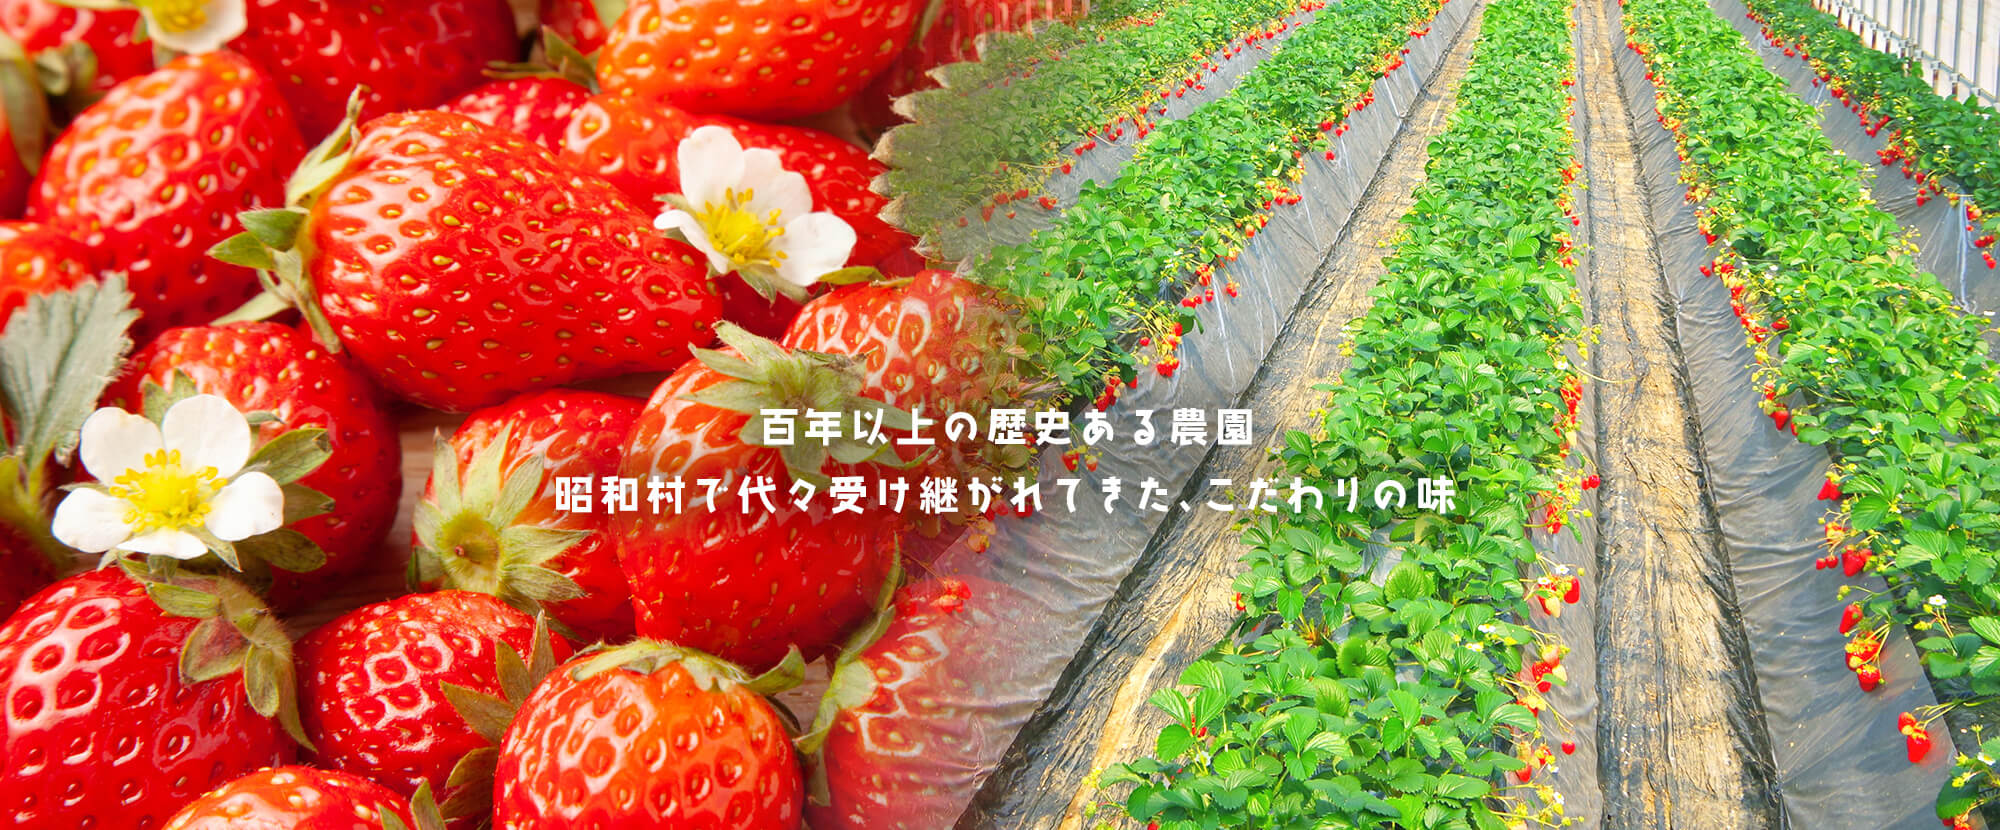 百年以上の歴史ある農園 昭和村で代々受け継がれてきたこだわりの味